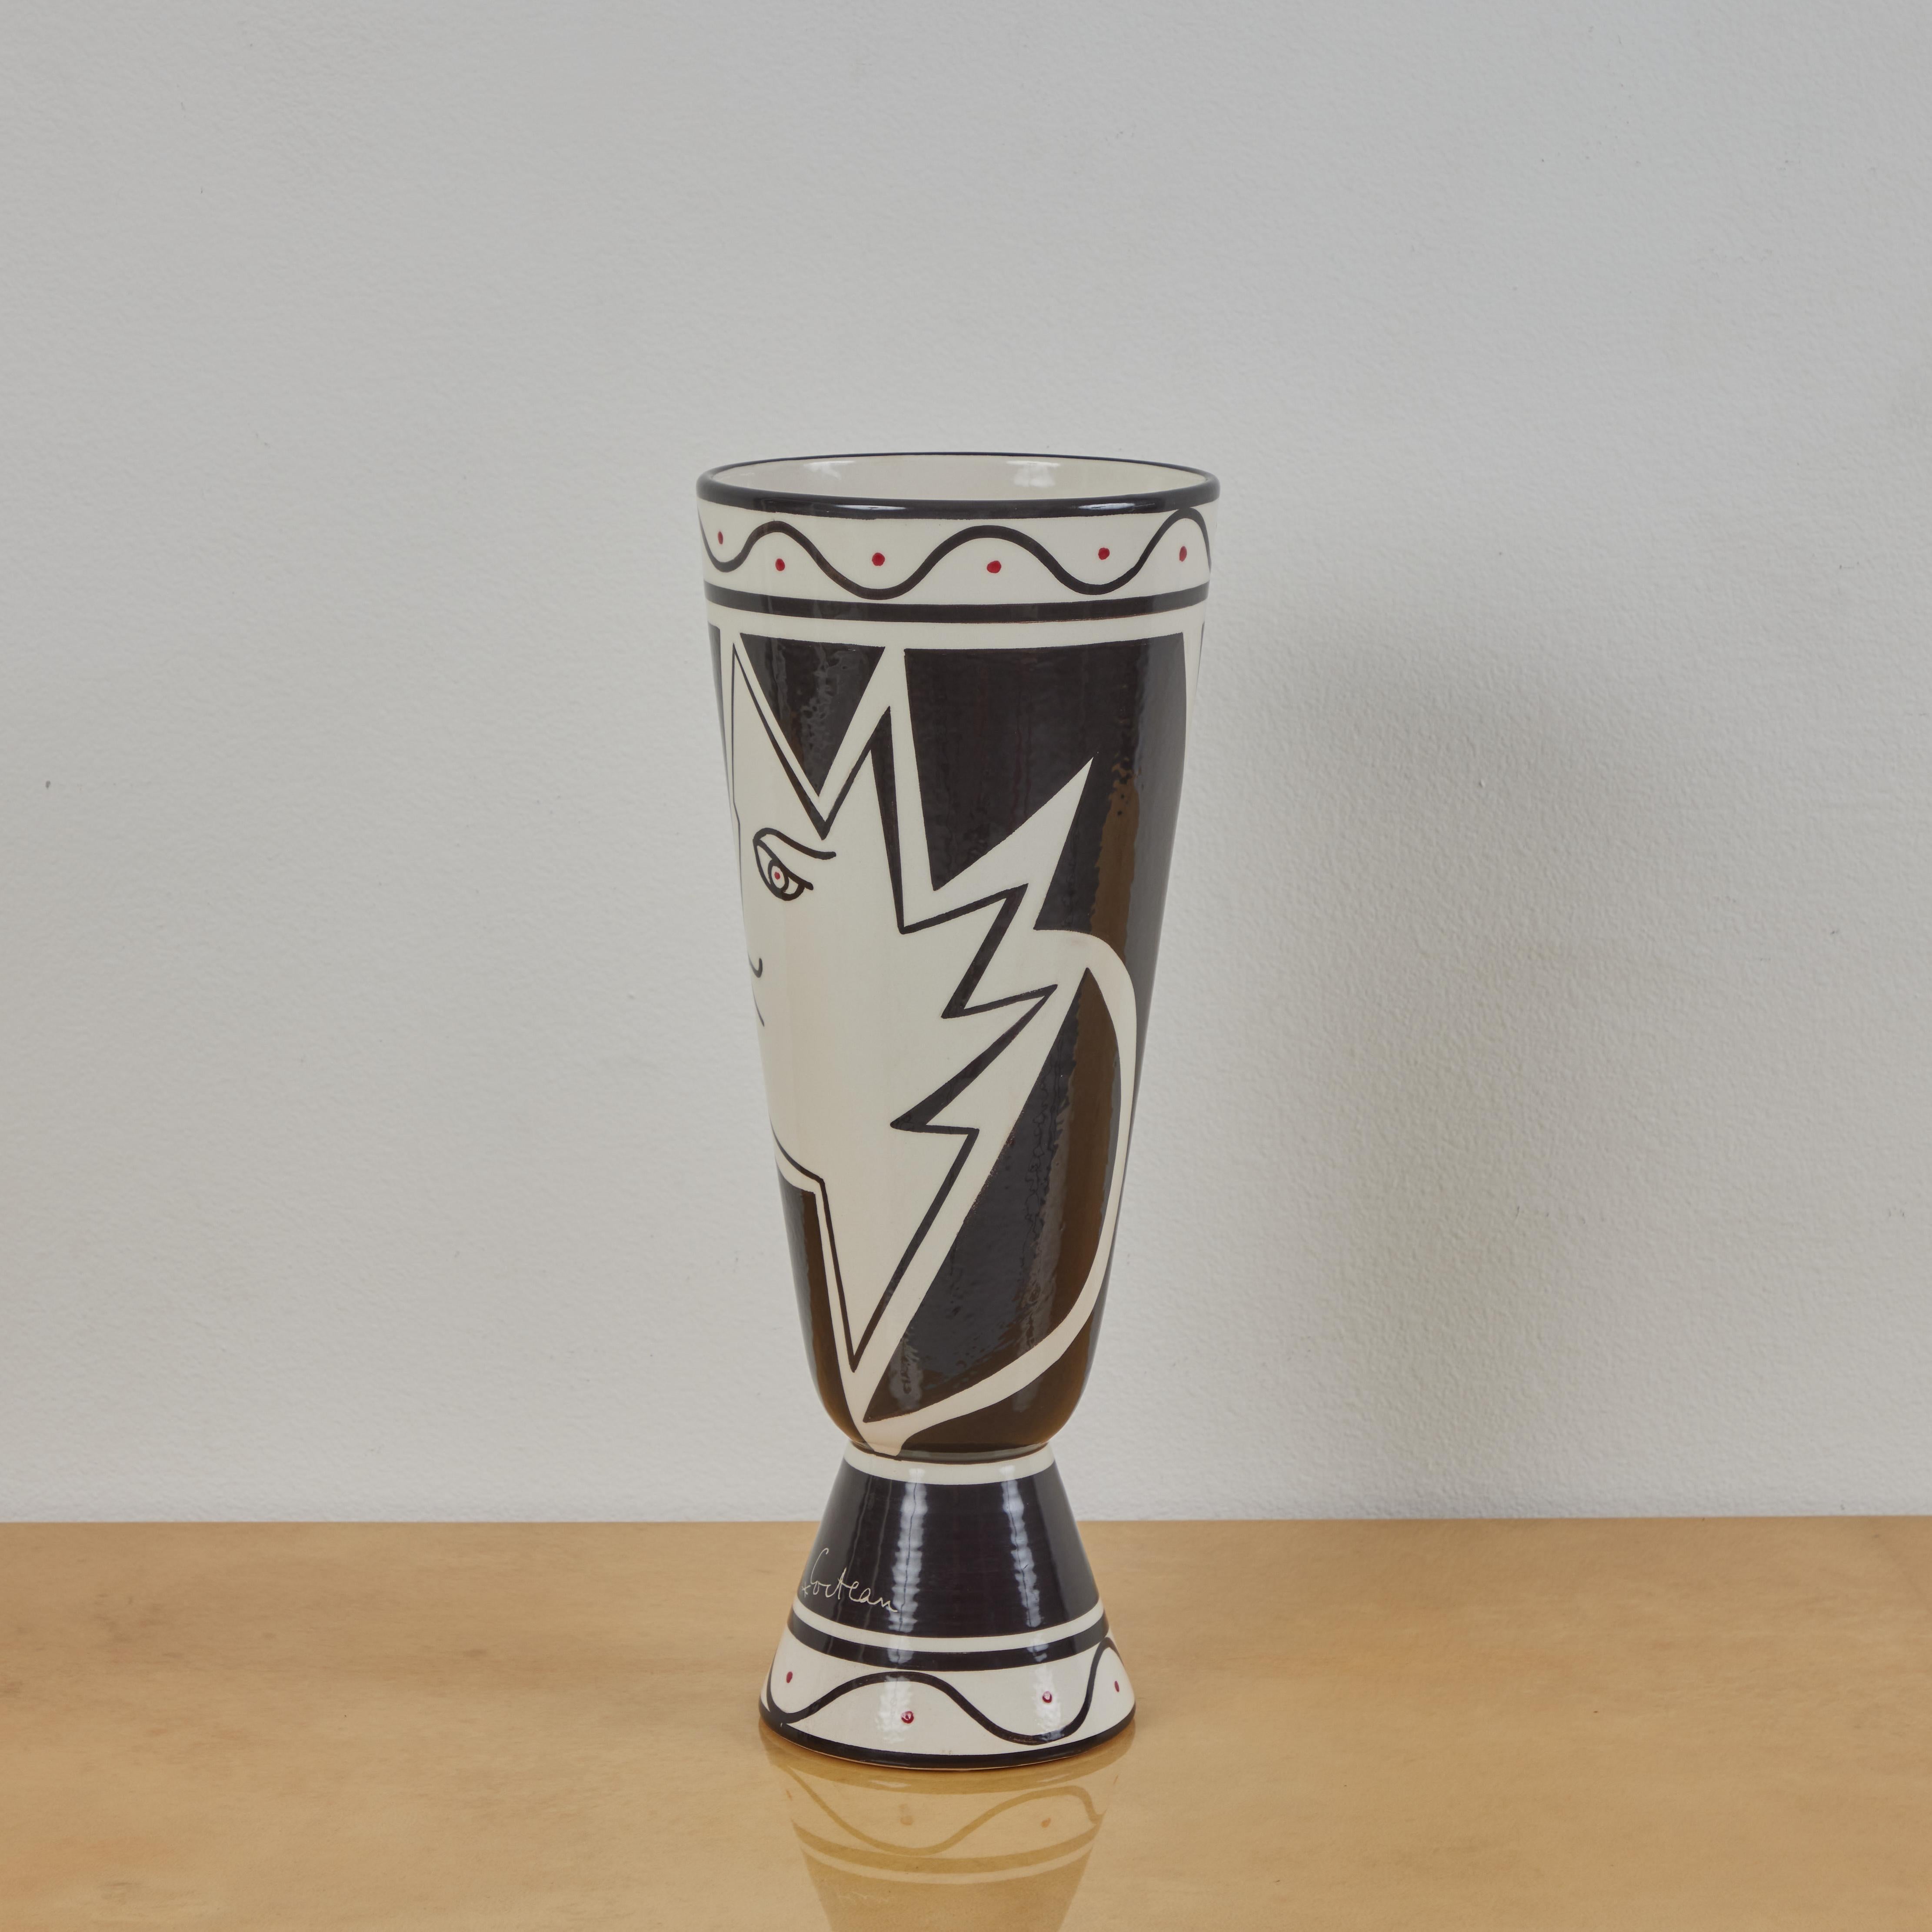 Il s'agit d'un vase décoré produit par Roche Bobois dans les années 2010. Le vase reprend un design réalisé par Jean Cocteau au début des années 1960. Il présente 2 profils géométriques avec des détails supplémentaires peints en rouge. Il s'agit